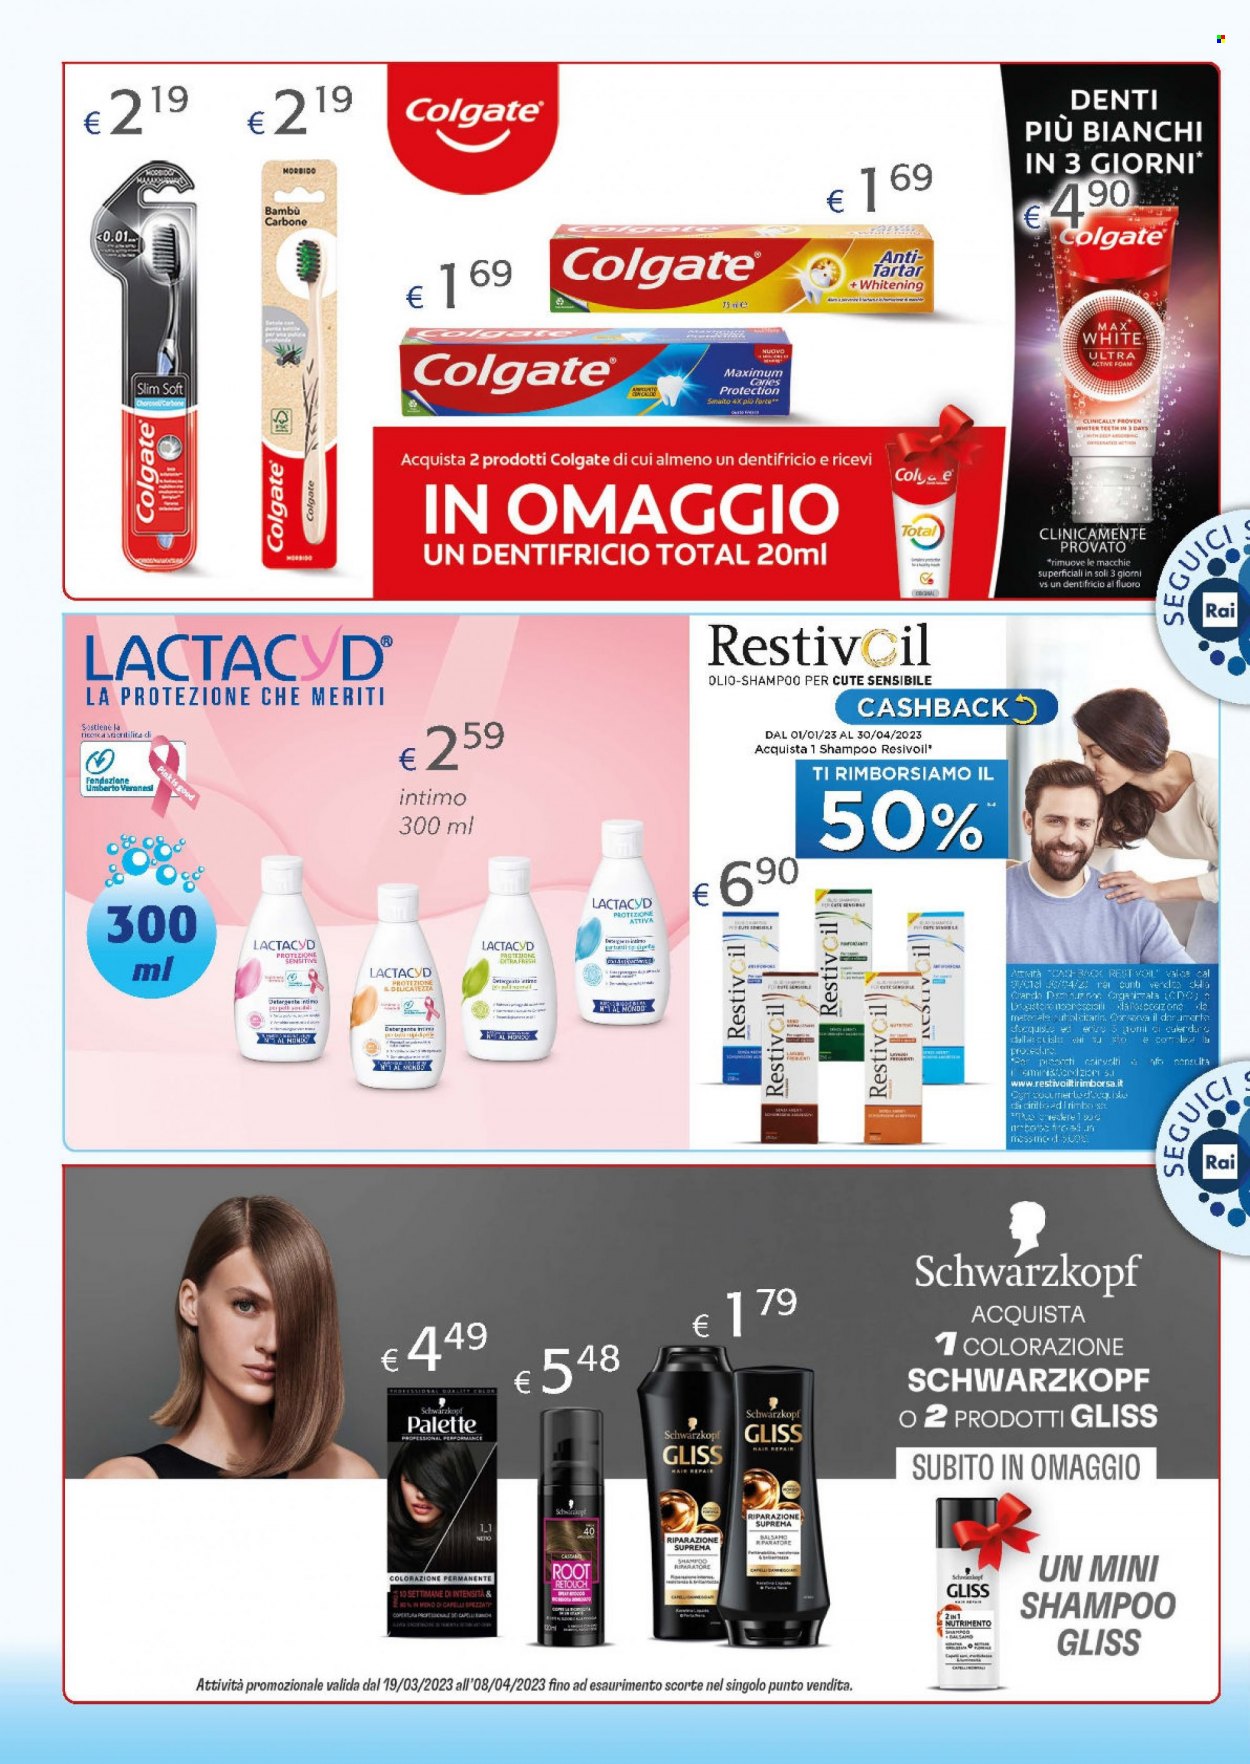 thumbnail - Volantino Acqua & Sapone - 15/3/2023 - 2/4/2023 - Prodotti in offerta - Lactacyd, detergente, Colgate, dentifricio, balsamo, colorazione capelli, shampoo, Testanera, Palette, olio shampoo. Pagina 2.